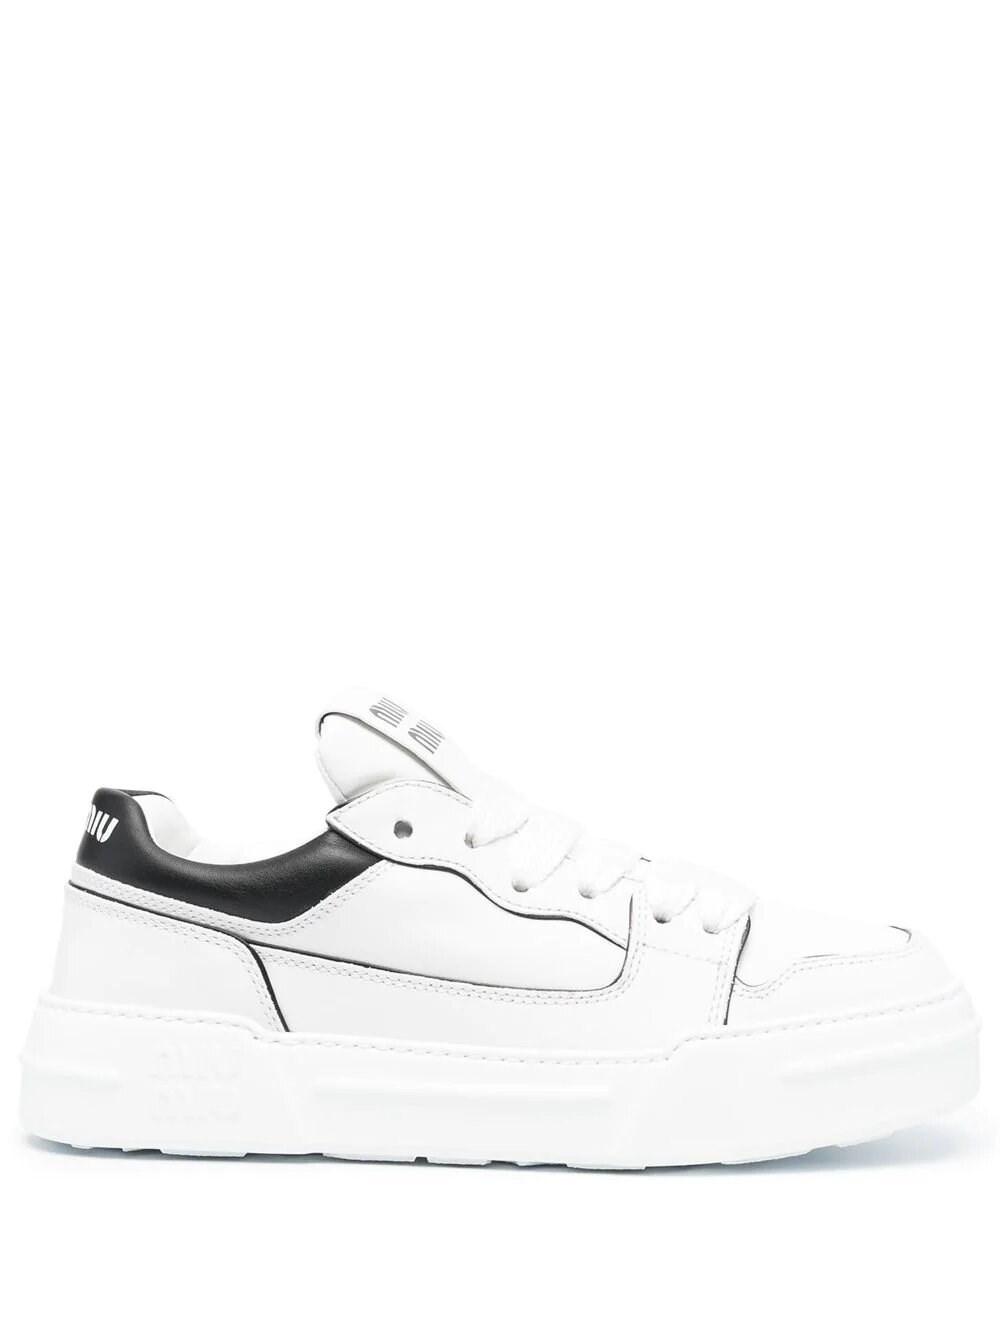 Miu Miu Panelled Flatform Sneakers in White | Lyst